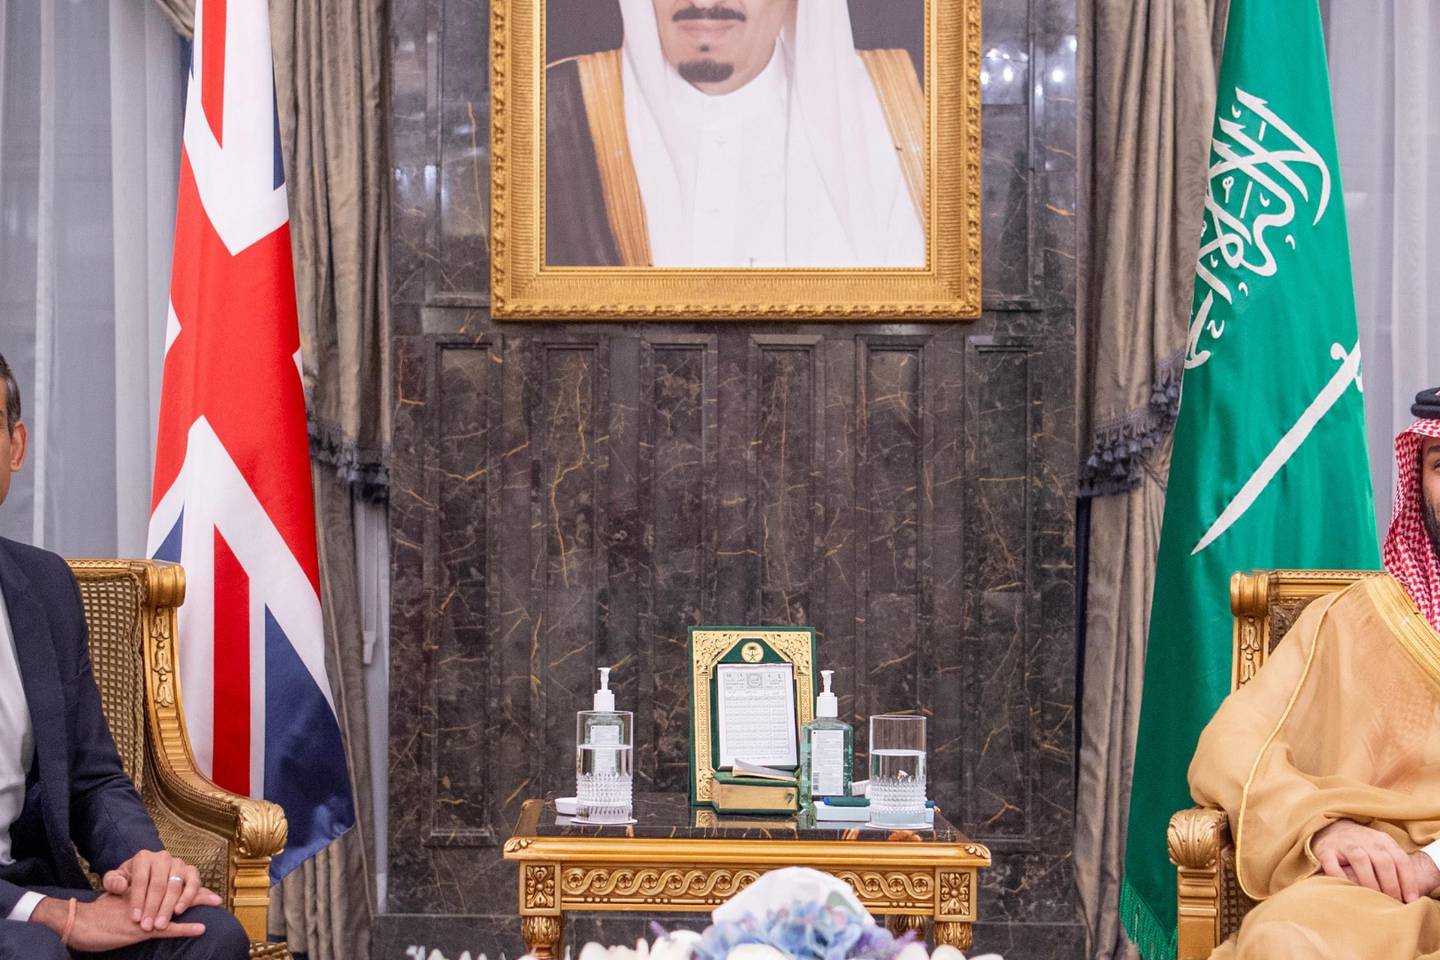 Rishi Sunak meets Saudi Crown Prince Mohammed bin Salman over Gaza crisis